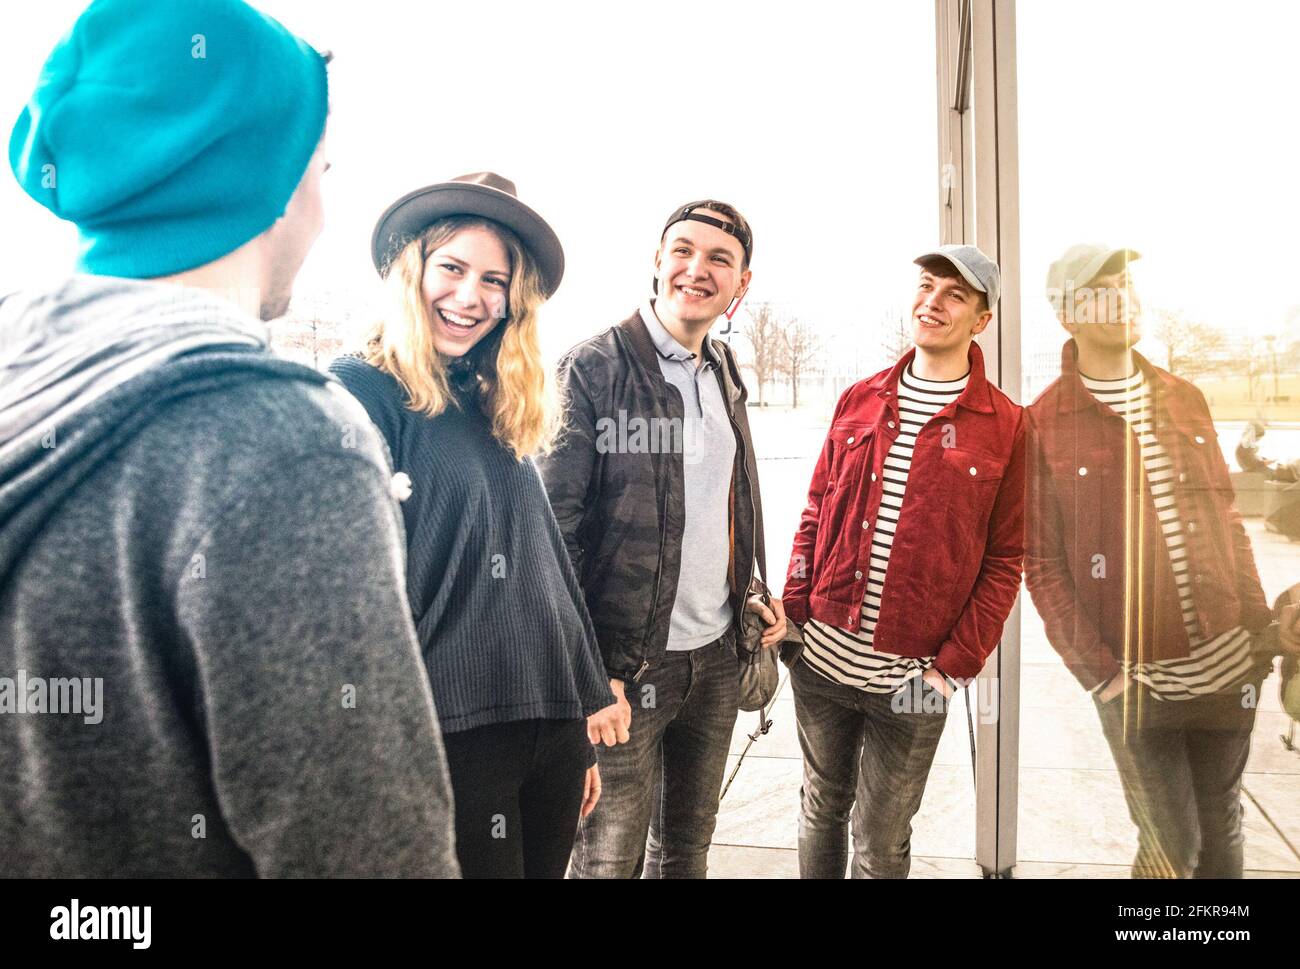 Beste Freunde Jungs und Mädchen Millennial mit echten unplugged Spaß Im Stadtgebiet in Berlin-Stadt - Freundschaft und Jugend Konzept mit jungen Menschen Stockfoto